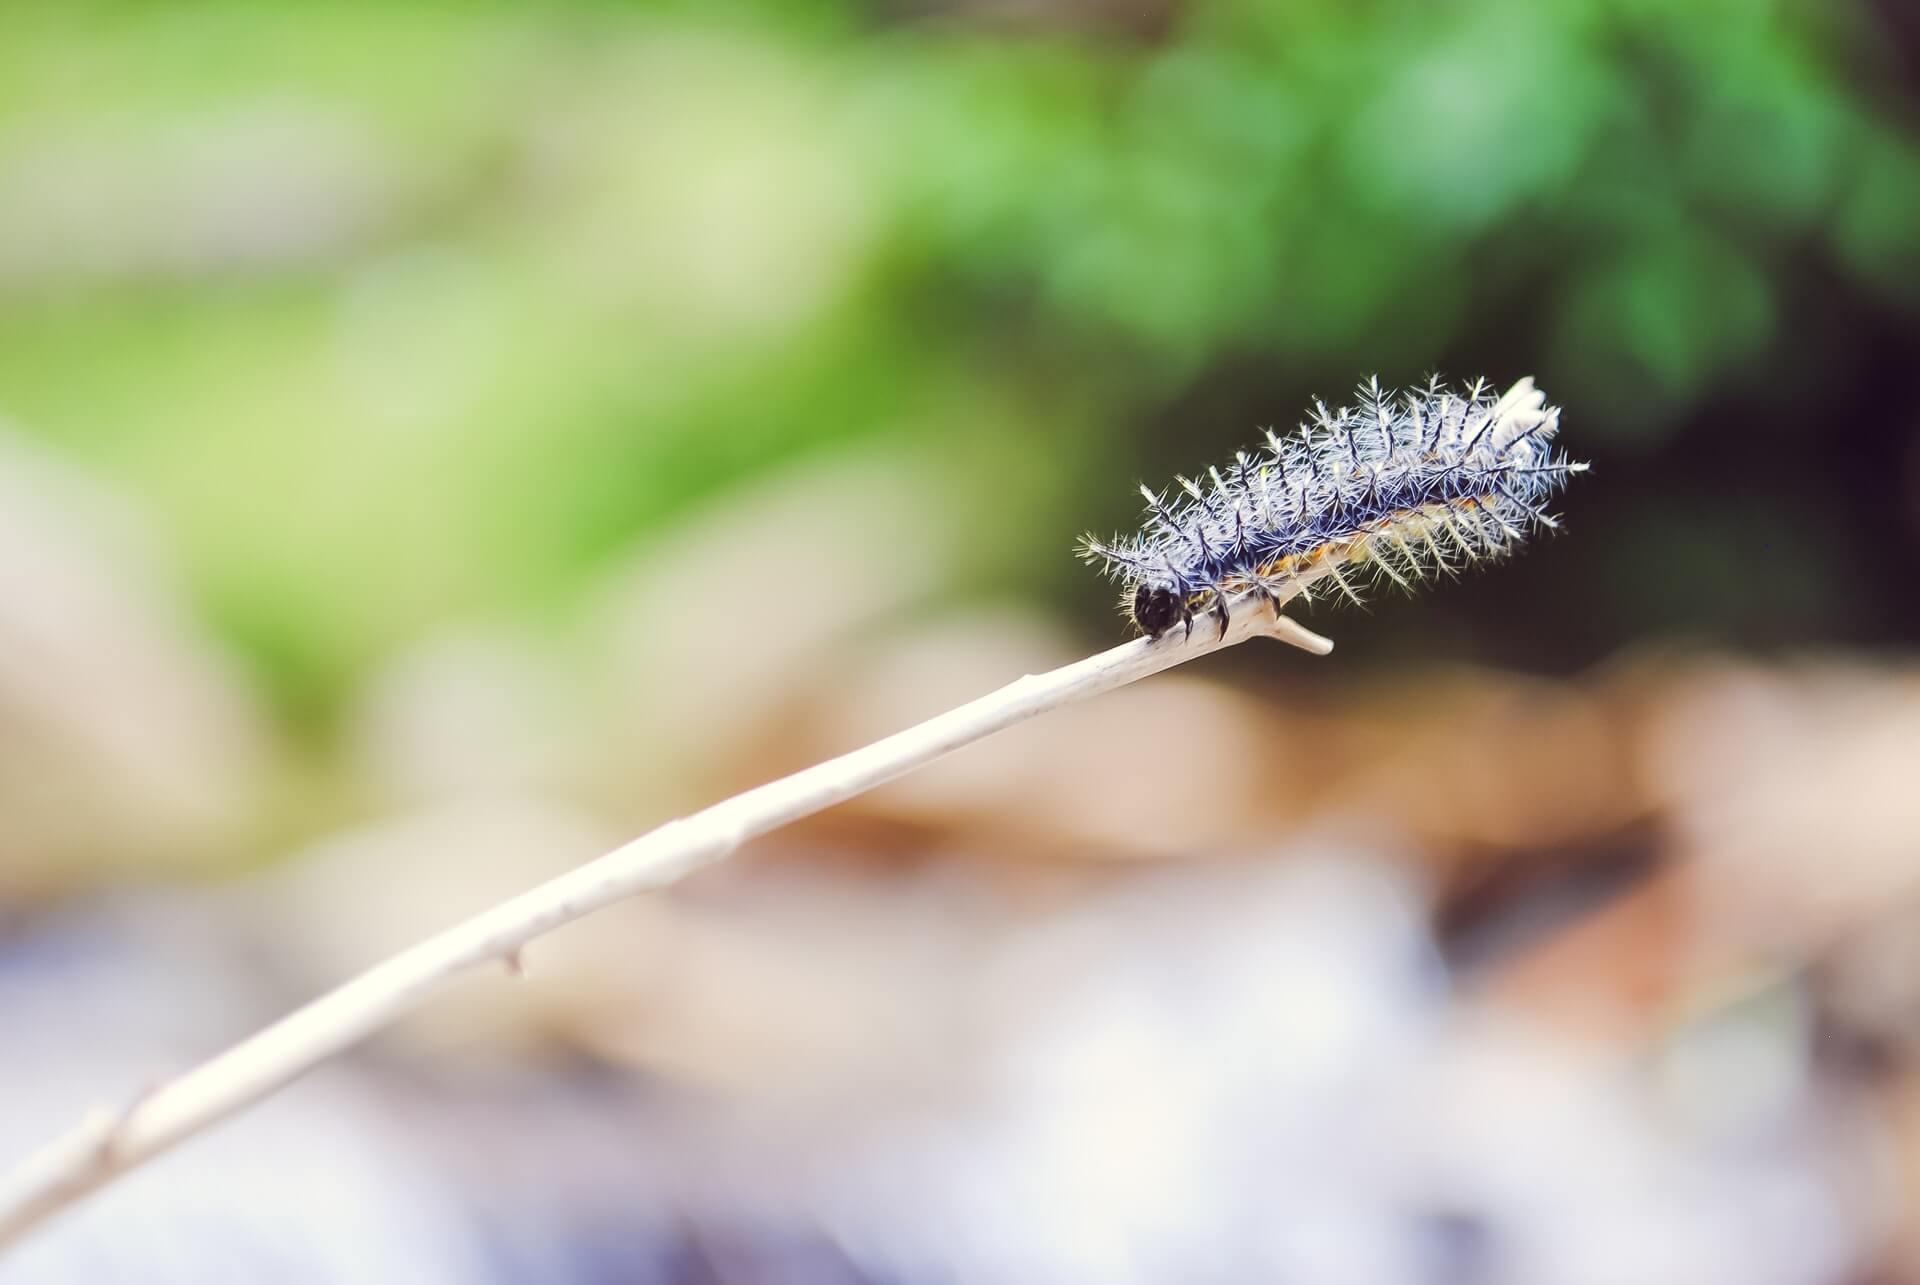 Hairy caterpillar on a twig. El Salado, Envigado, Colombia.